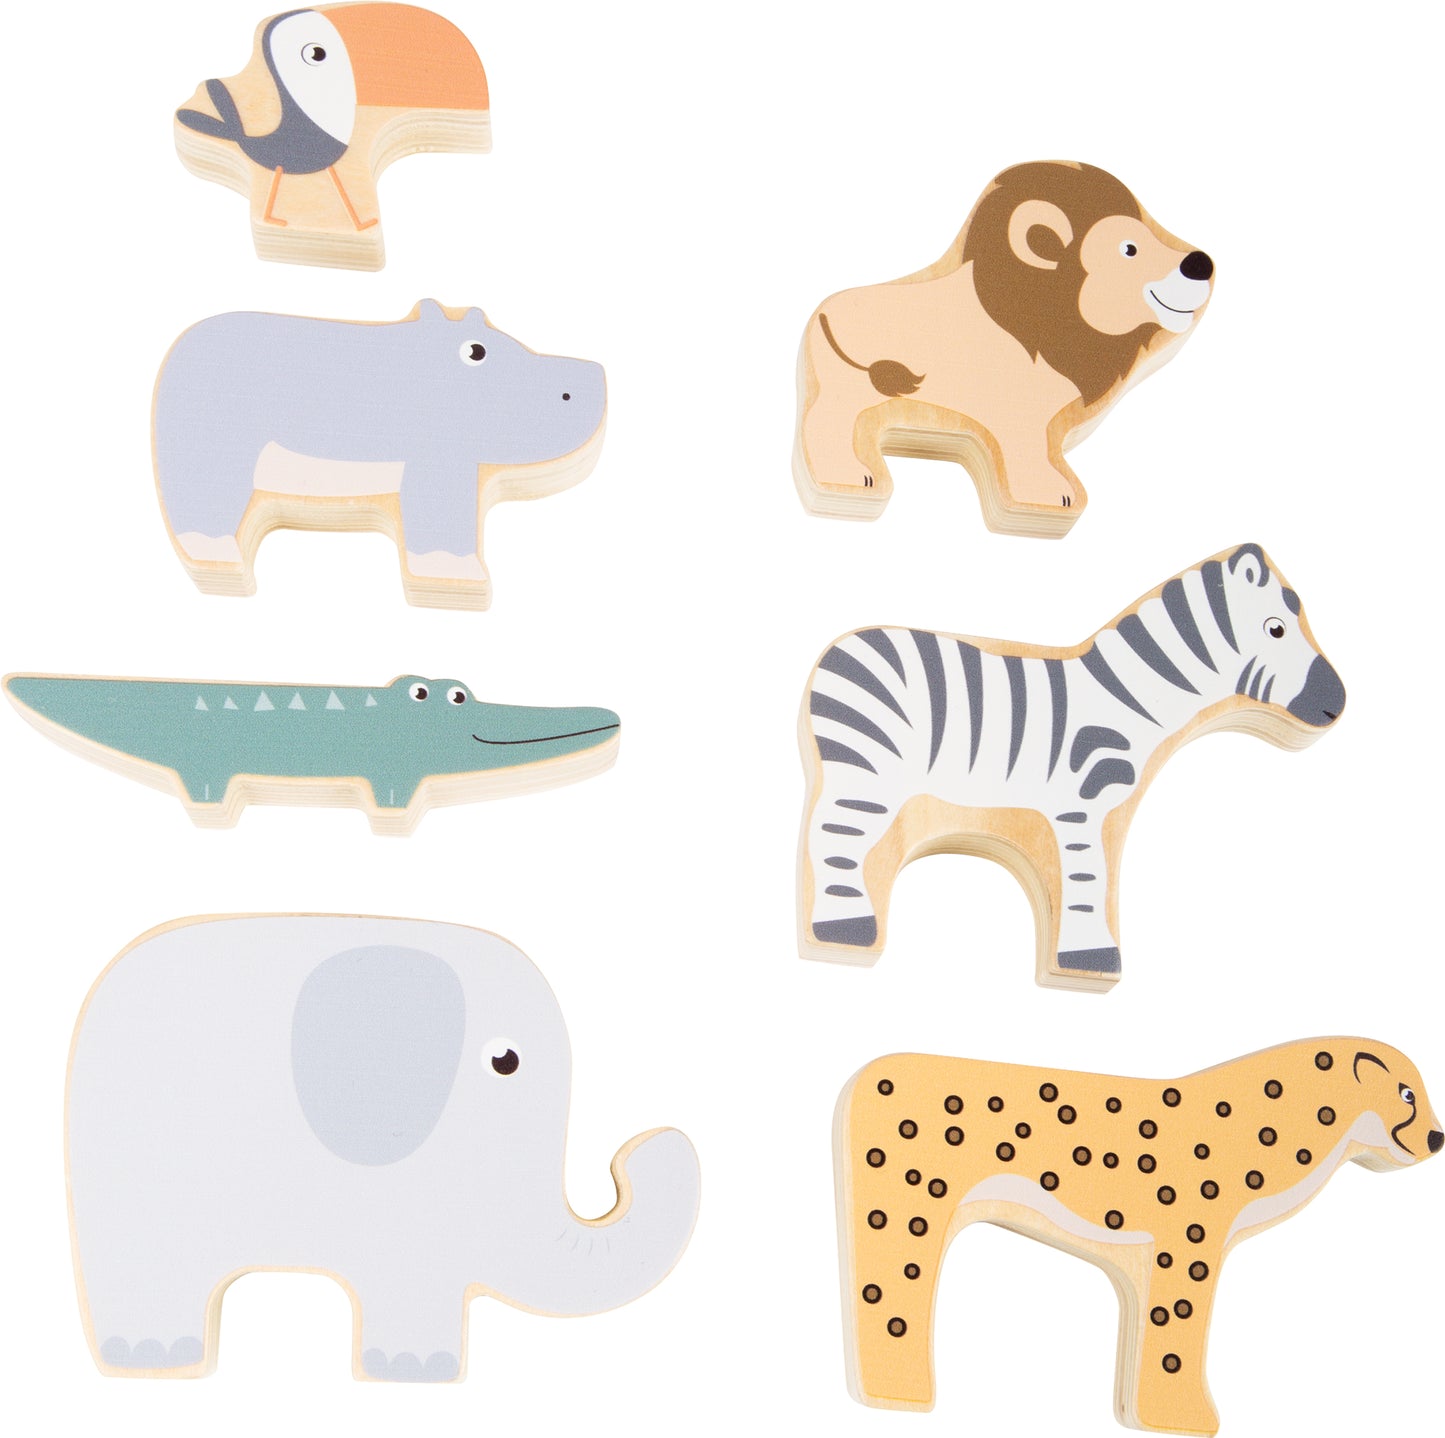 stapel- en evenwichtsspel - houten speelgoed  - speelgoed vanaf 1 jaar - safari dieren - Small Foot 